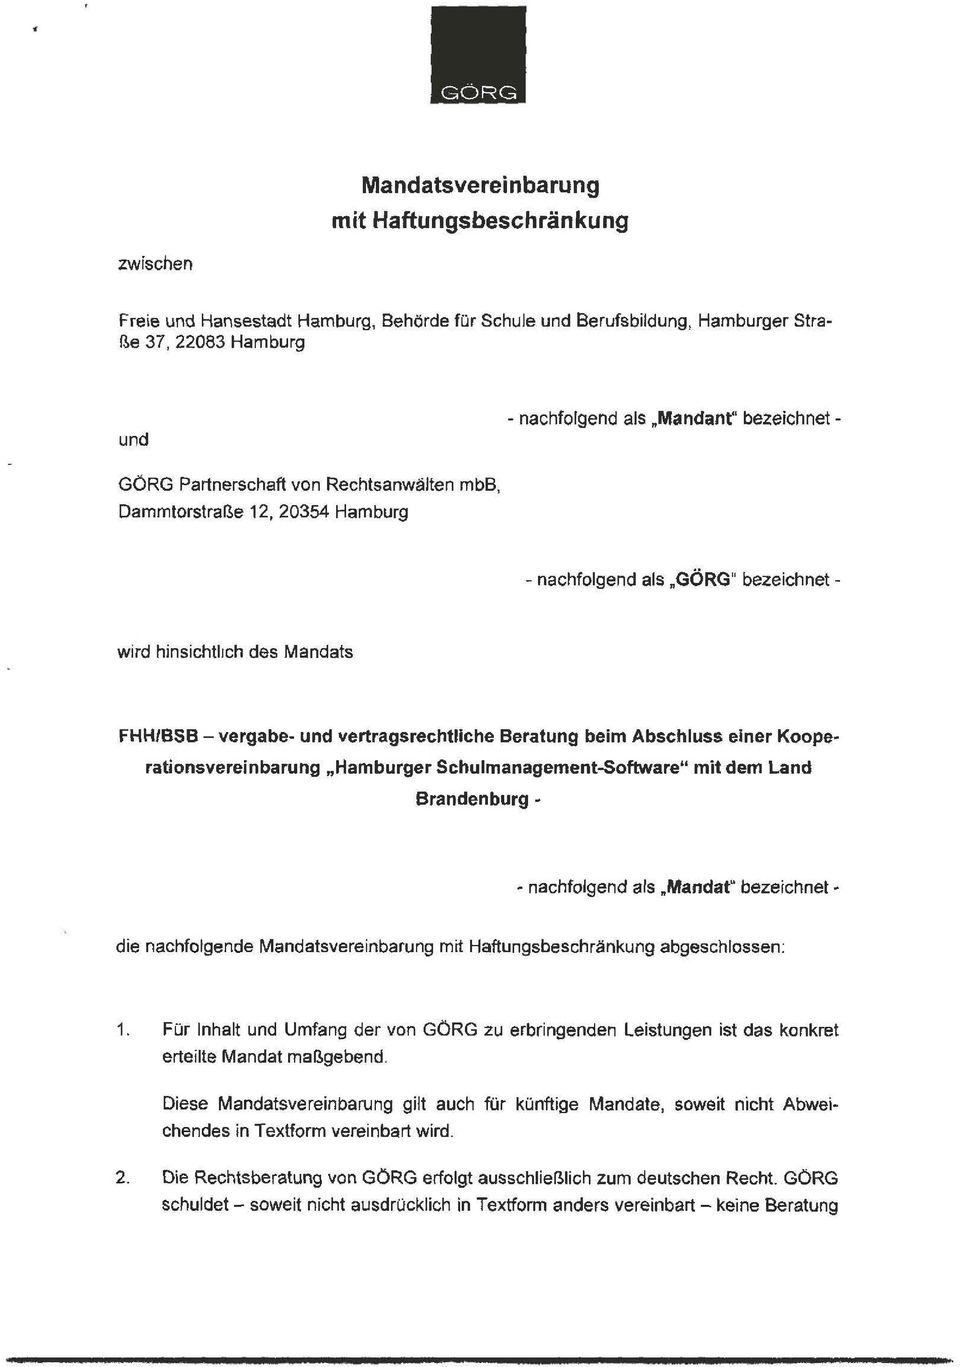 Beratung beim Abschluss einer Koope- rationsvereinbarung Hamburger Schulmanagement-Software mit dem Land Brandenburg - - nachfolgend als Mandat bezeichnet - die nachfolgende Mandatsvereinbarung mit